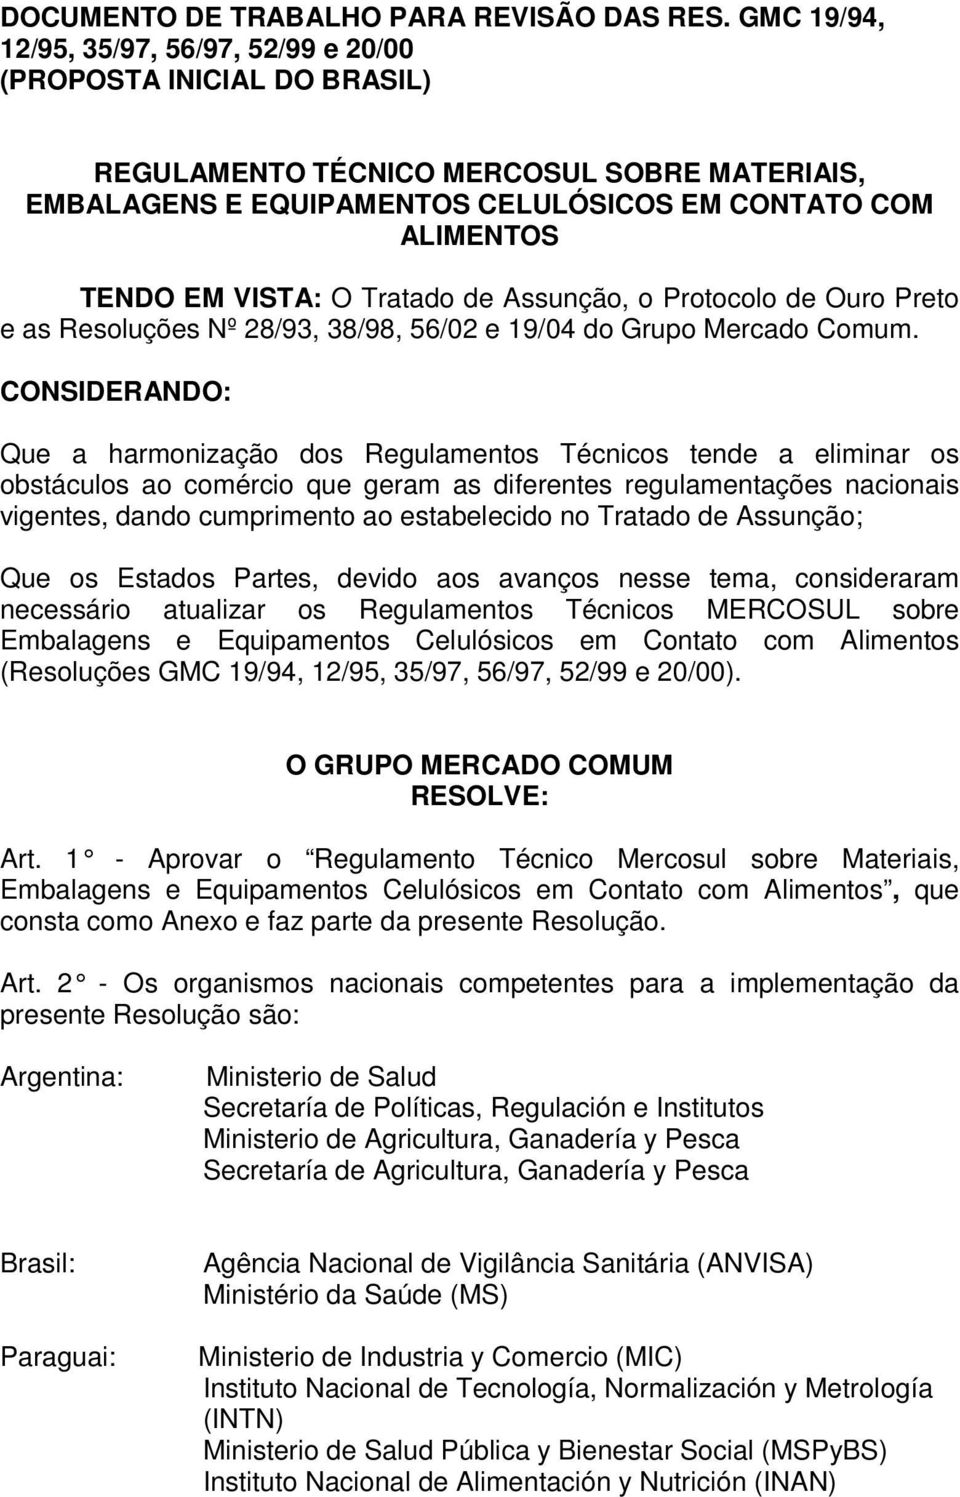 O Tratado de Assunção, o Protocolo de Ouro Preto e as Resoluções Nº 28/93, 38/98, 56/02 e 19/04 do Grupo Mercado Comum.